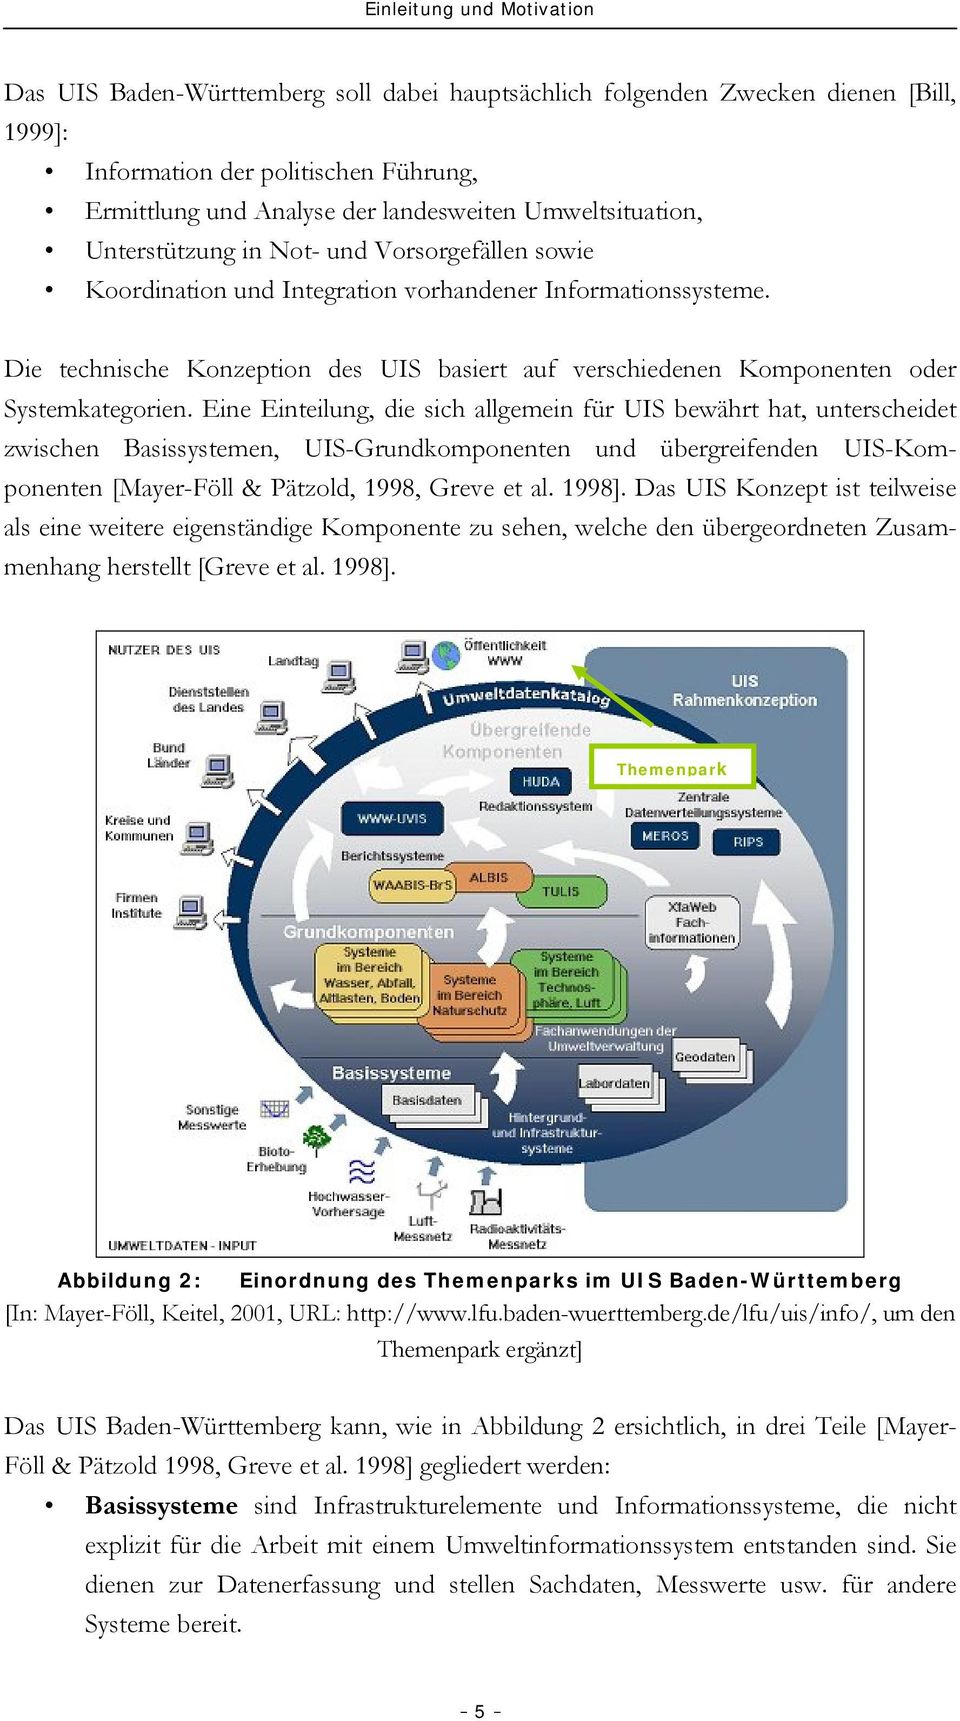 Die technische Konzeption des UIS basiert auf verschiedenen Komponenten oder Systemkategorien.